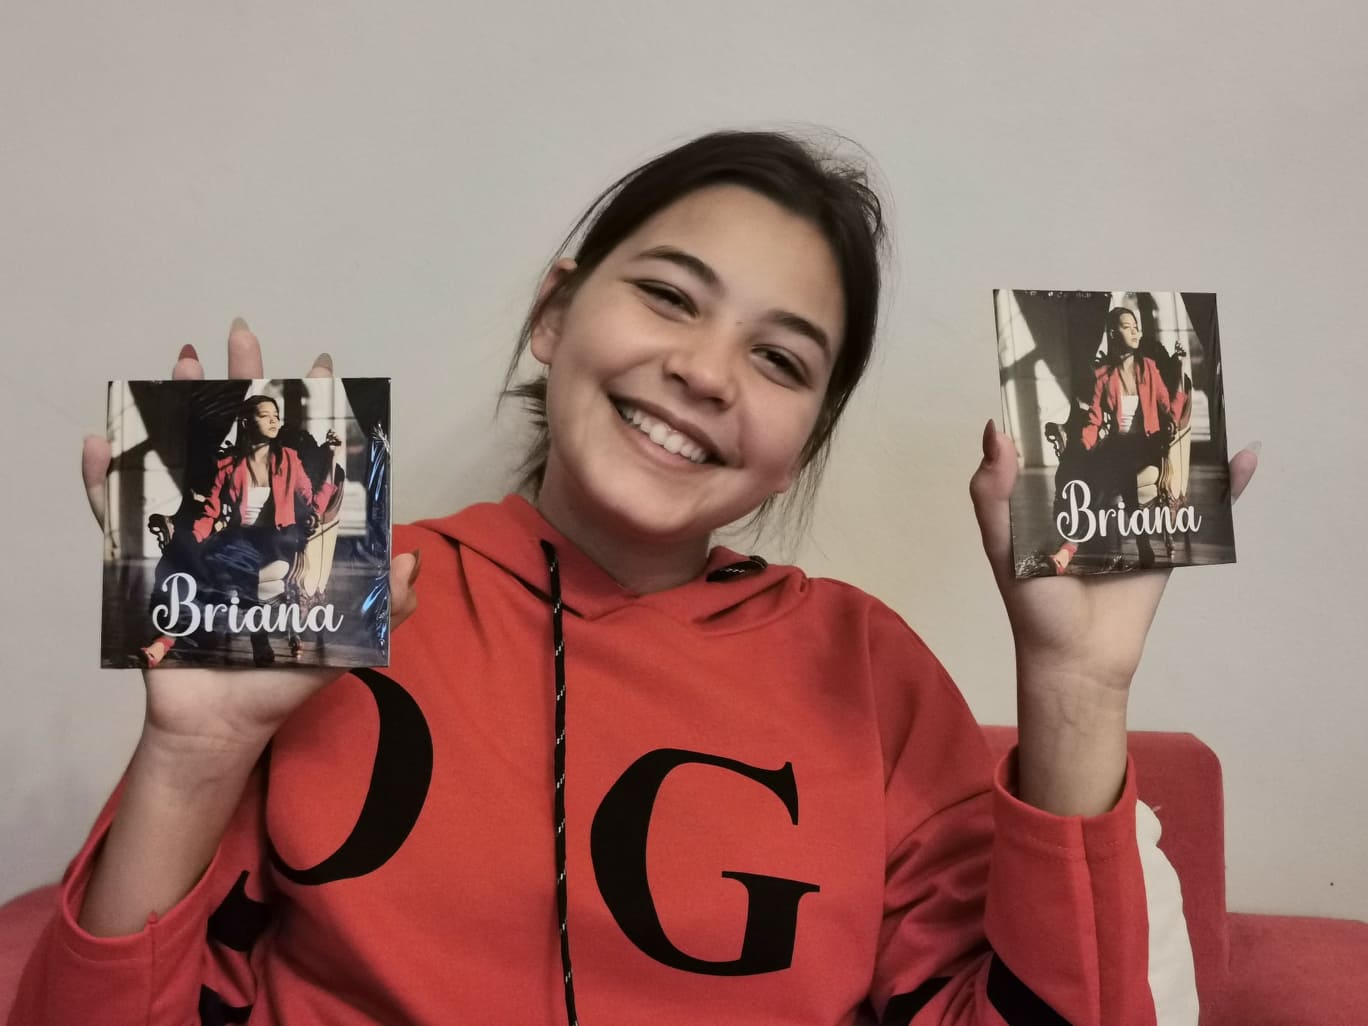 Briana Andreea Magdas première album une véritable surprise